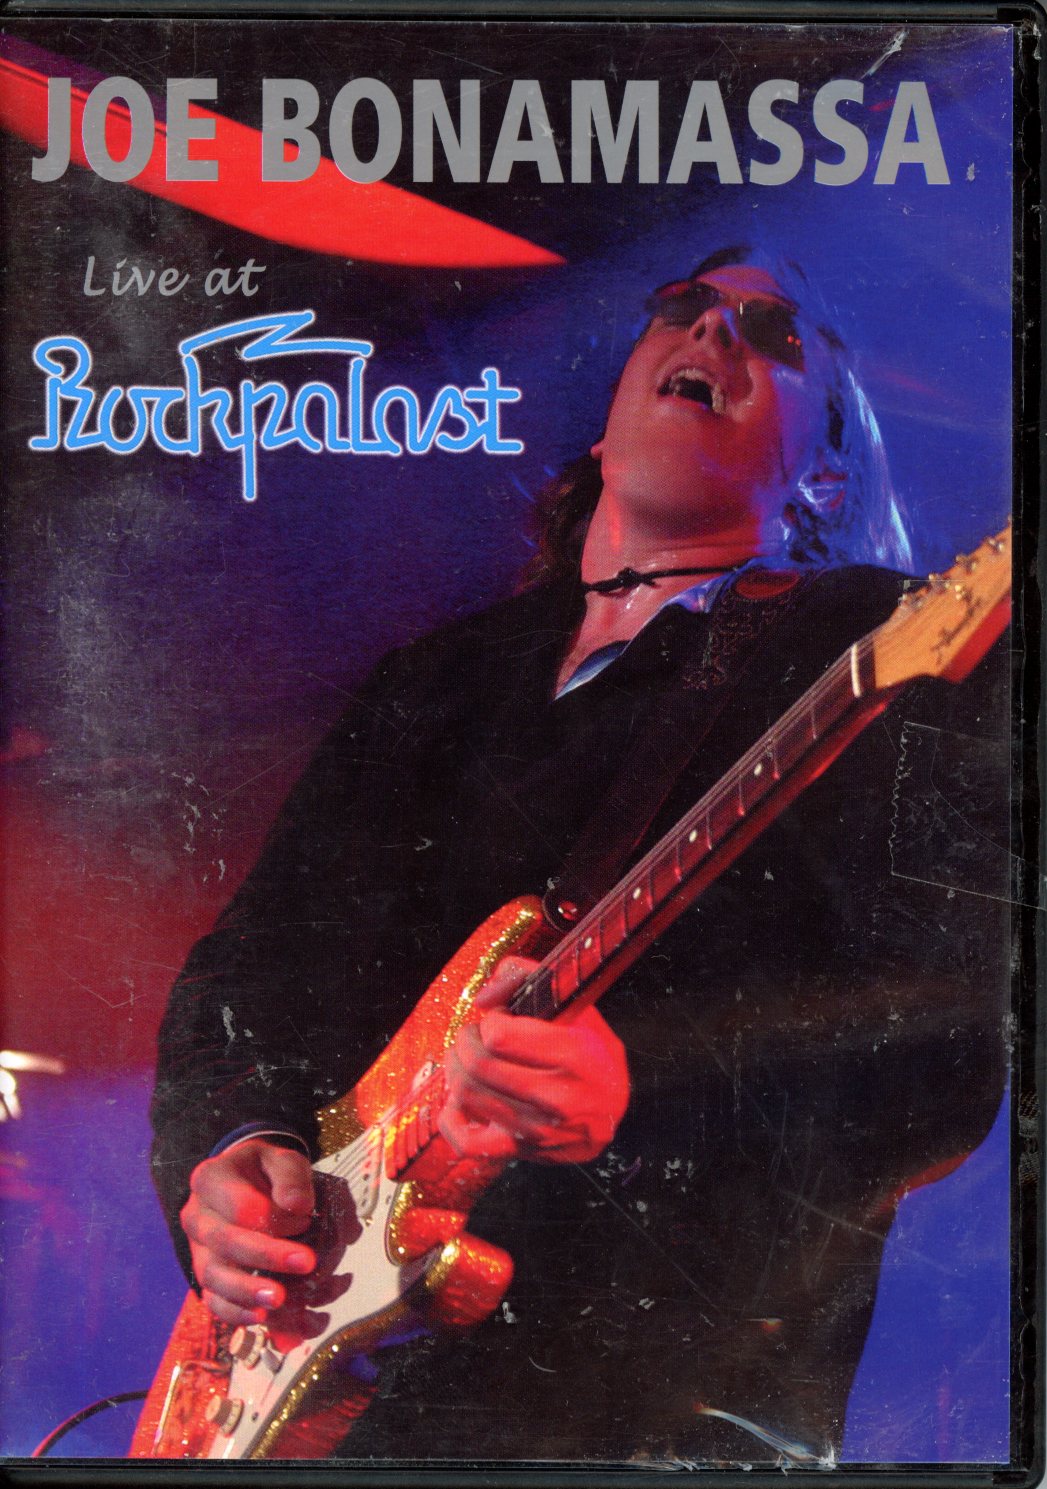 JOE BONAMASSE LIVE AT ROCKPALAST DVD 8712725718475